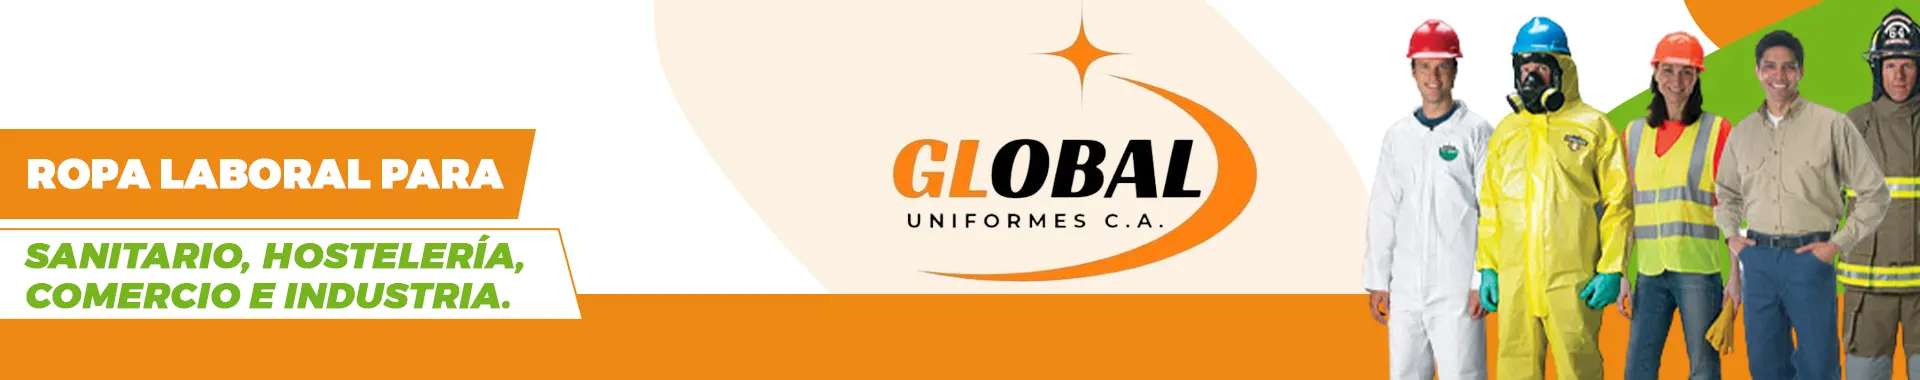 Imagen 3 del perfil de Global Uniformes